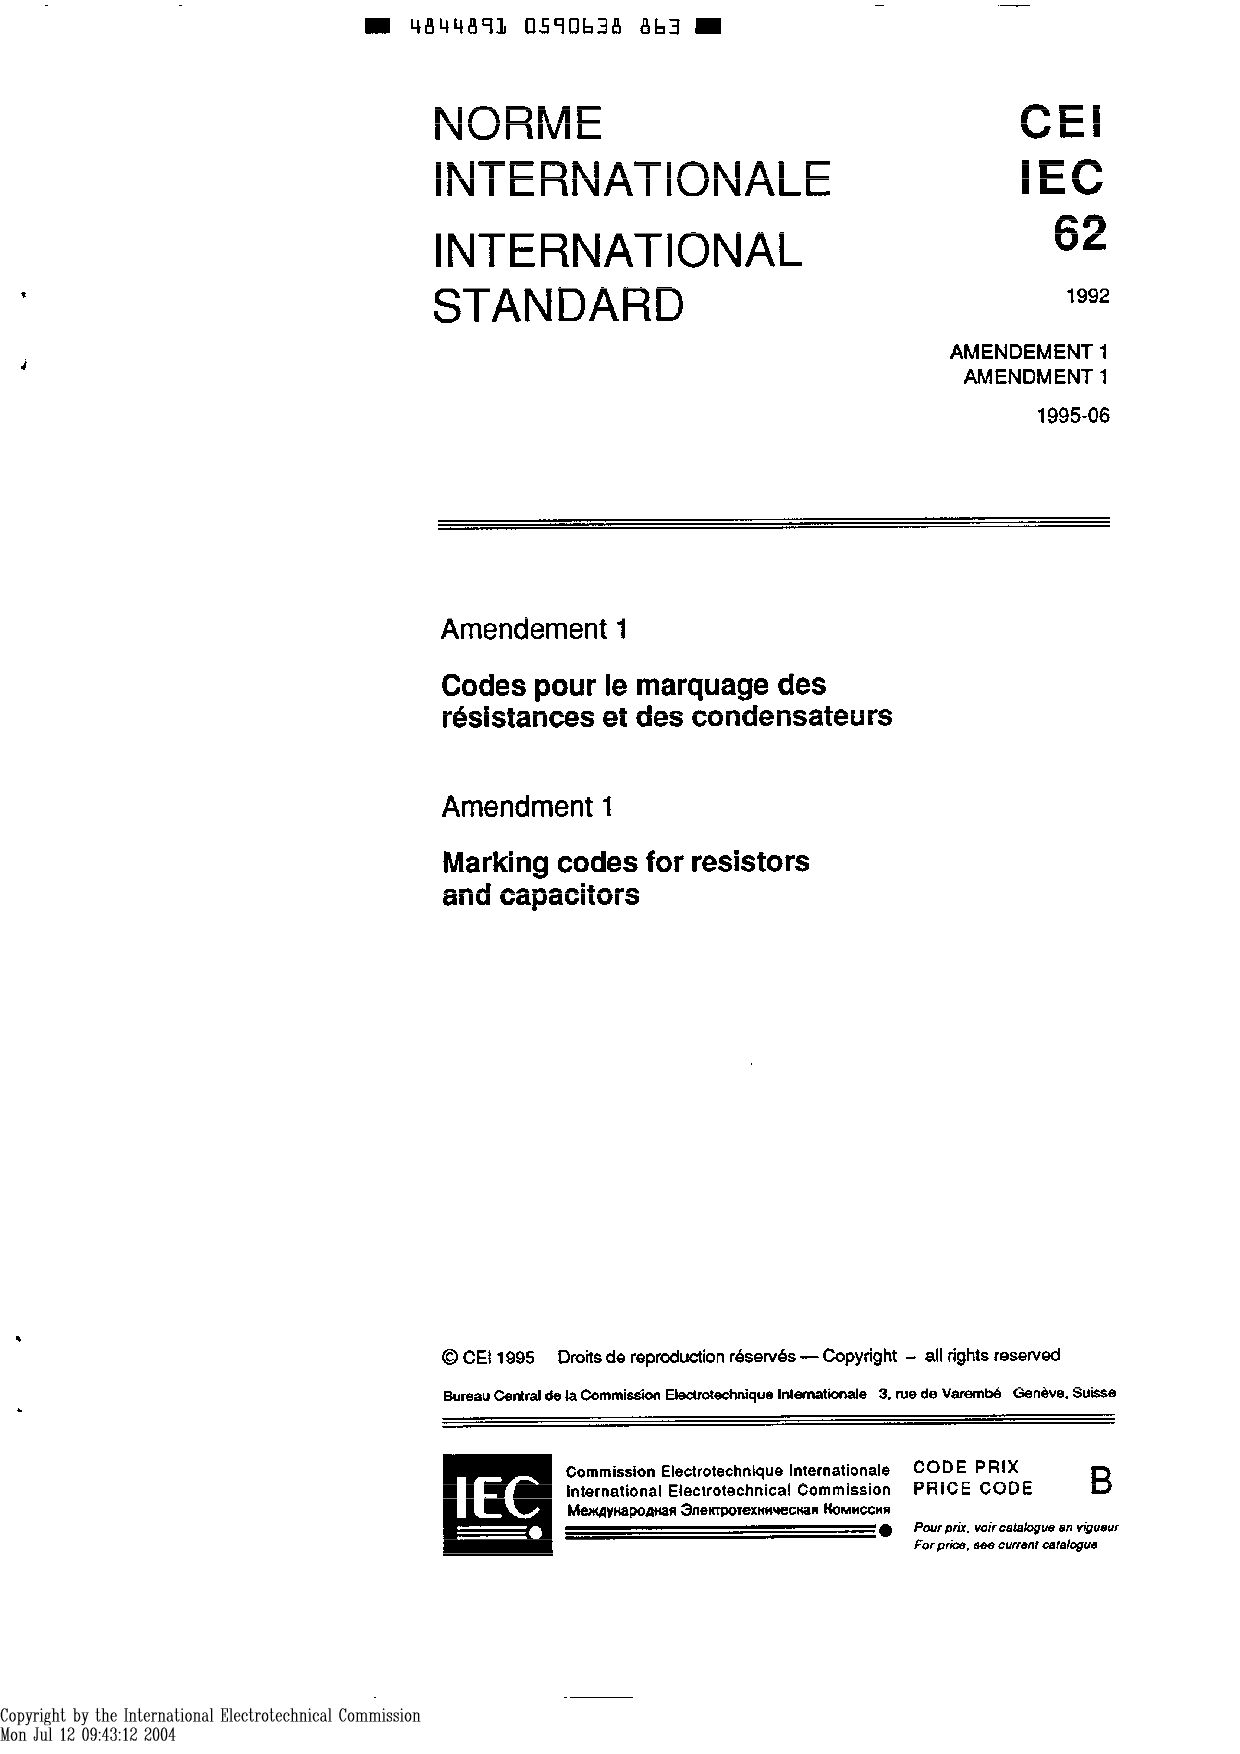 IEC 60062:1992封面图